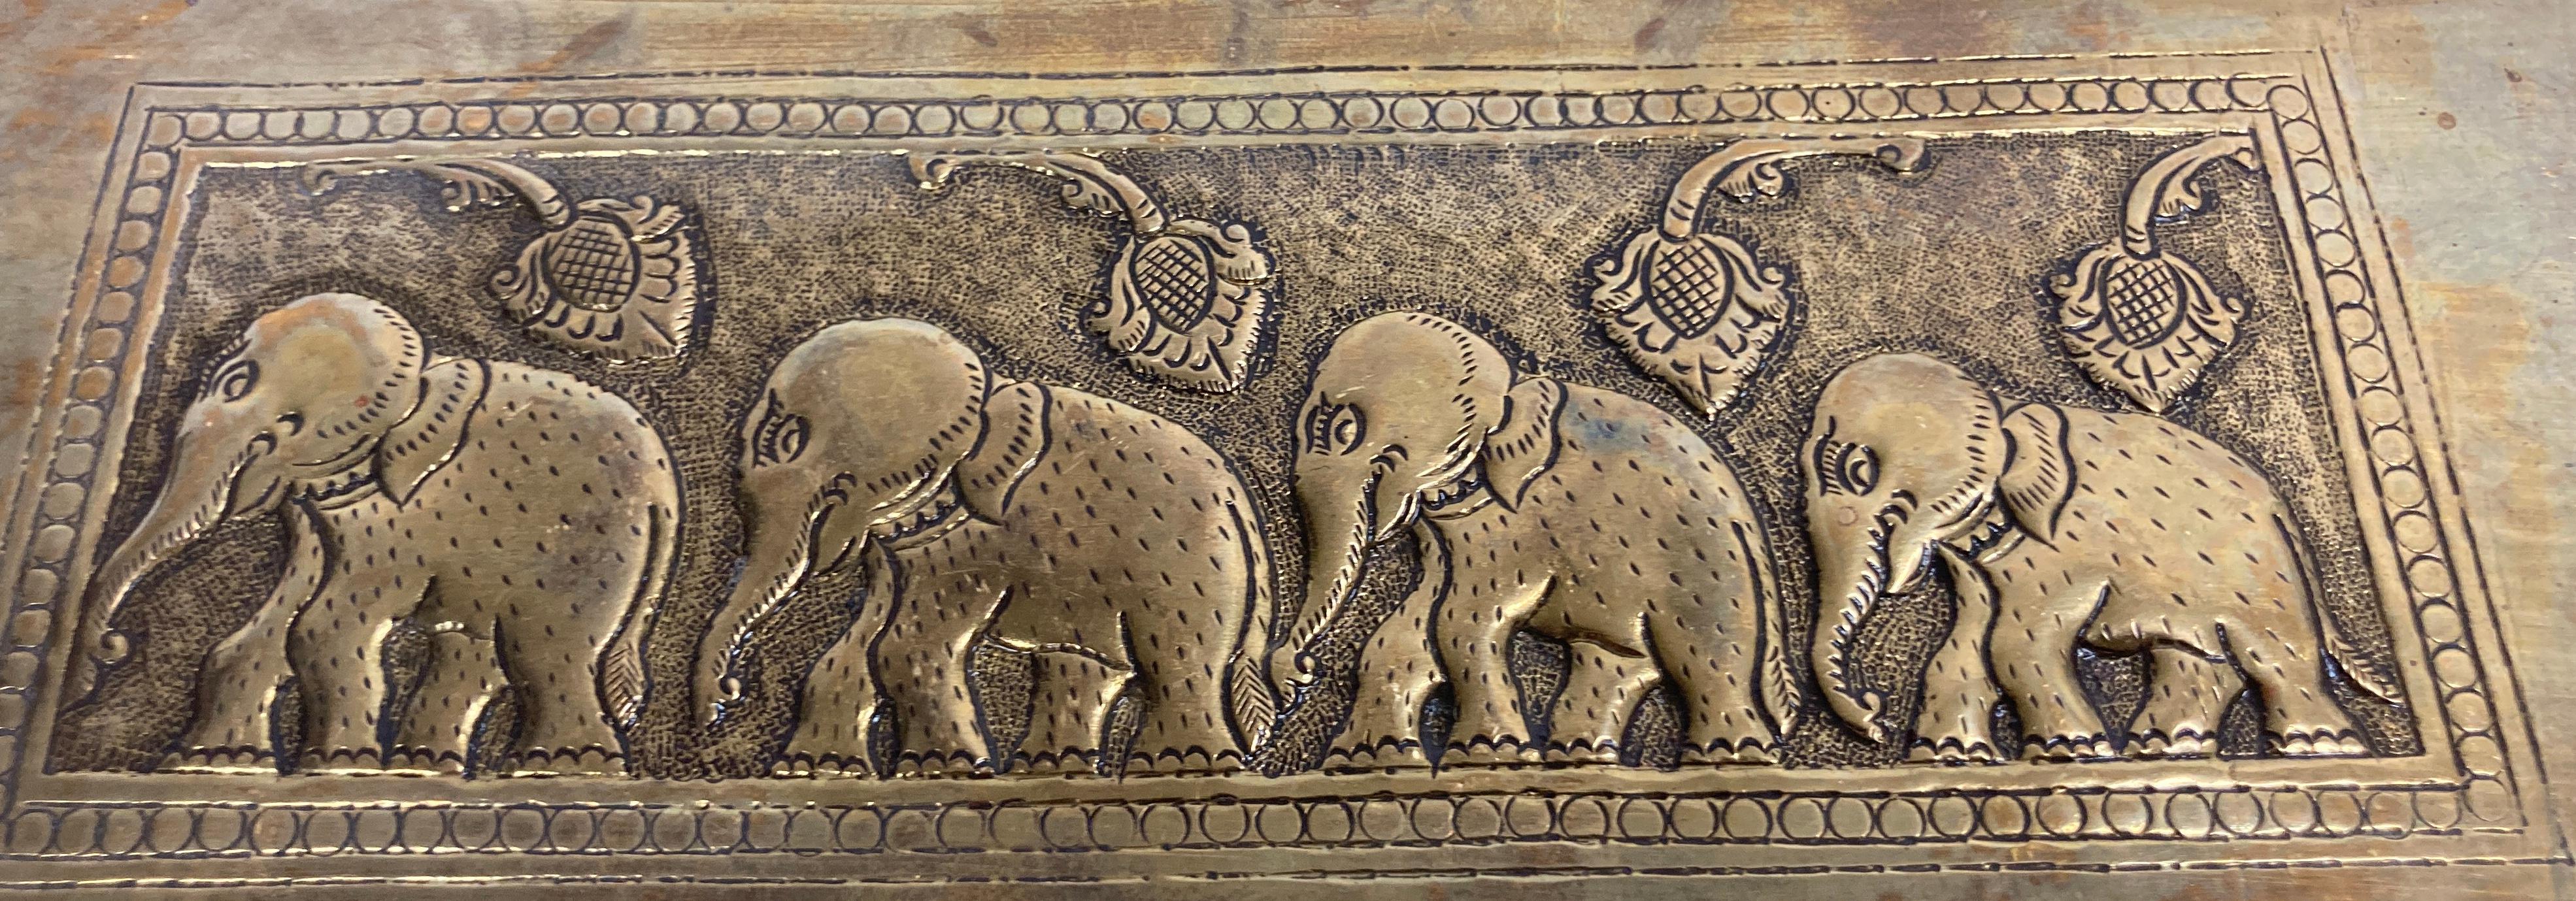 Metal Vintage Brass Tray Indian Mughal Elephants Motif Engraved Serving Platter For Sale